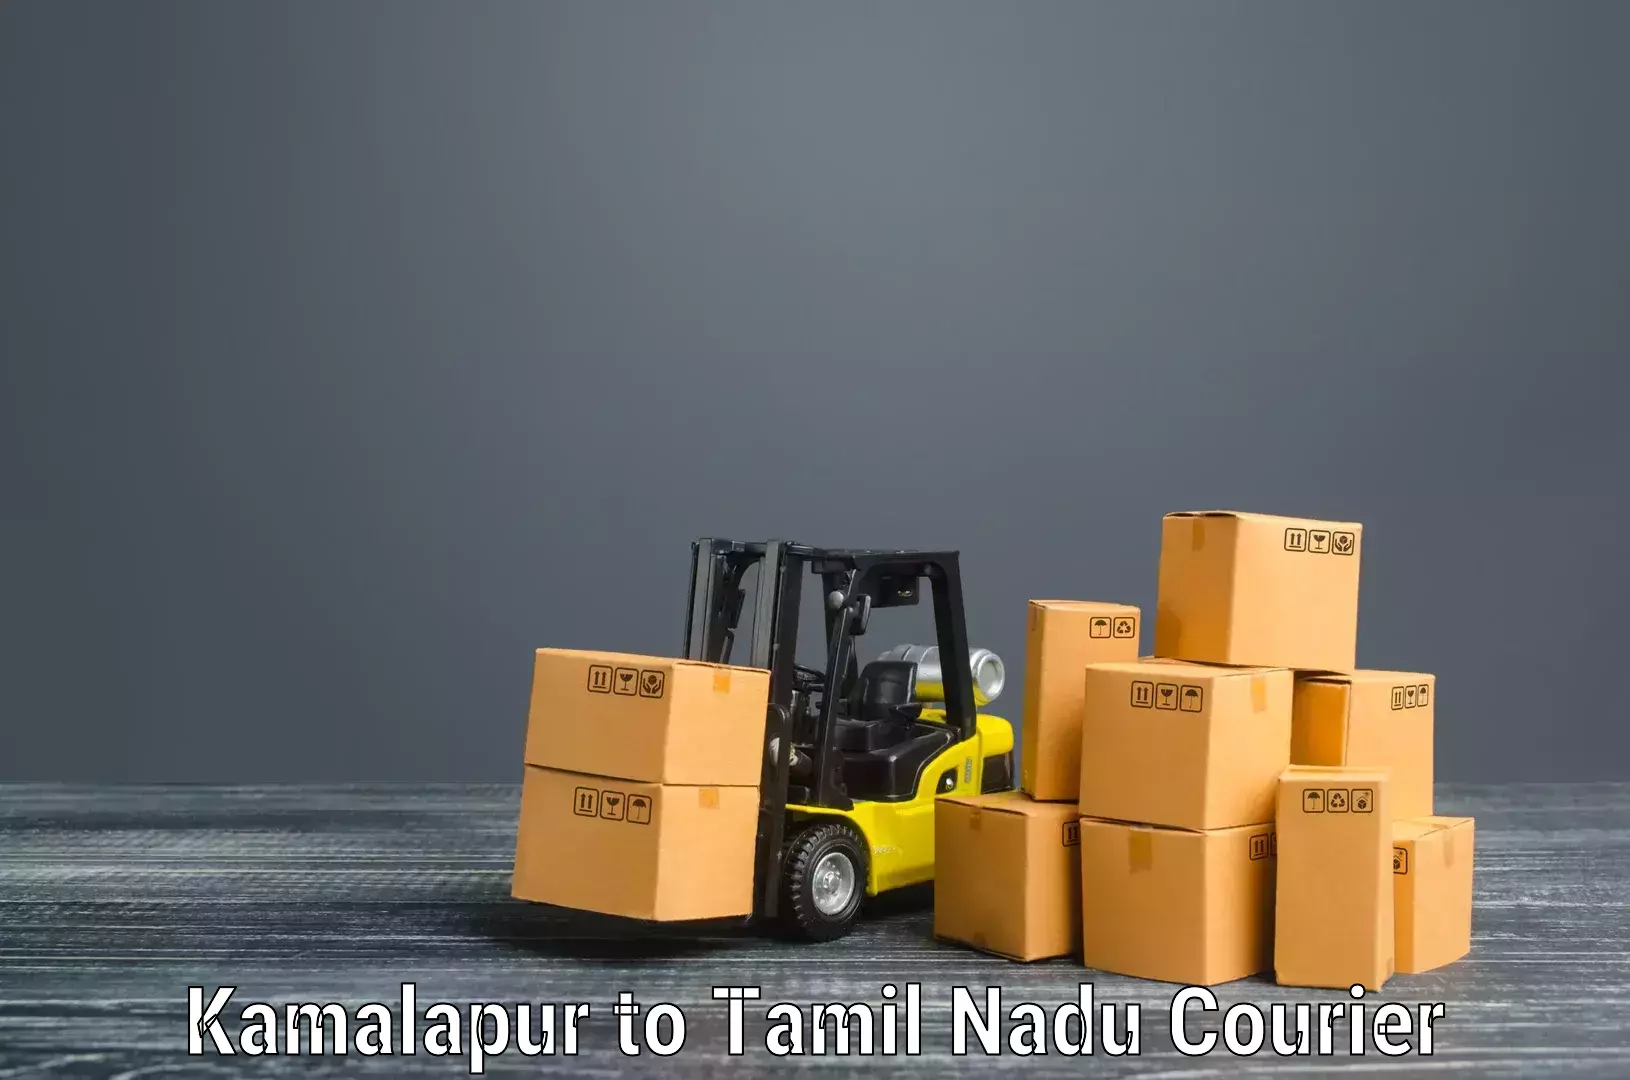 Furniture transport experts Kamalapur to Tiruturaipundi